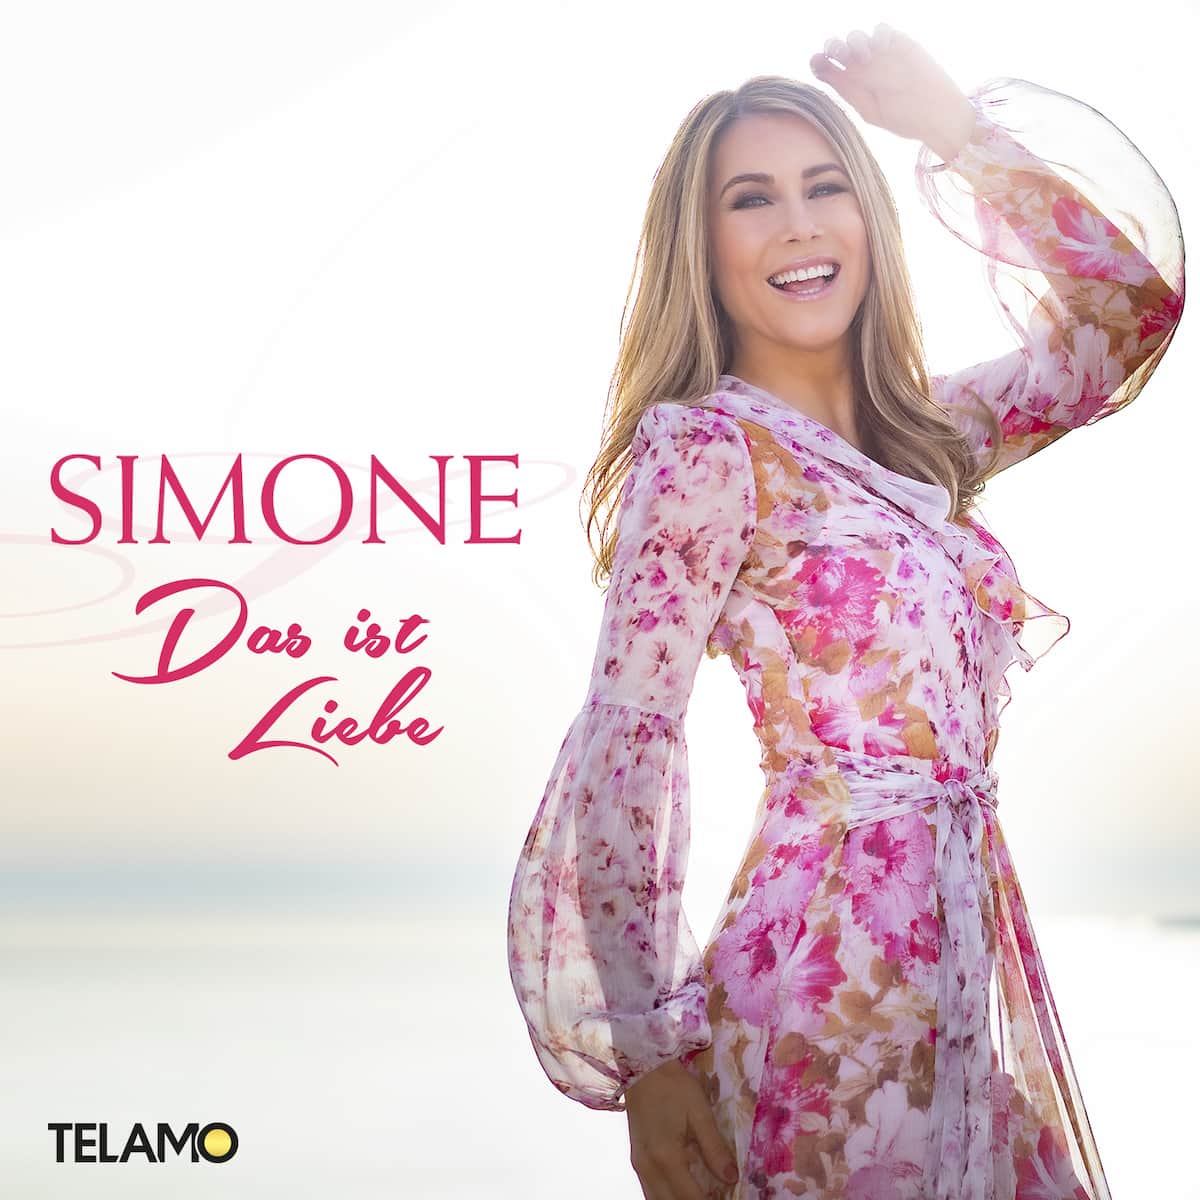 Simone “Das ist Liebe”